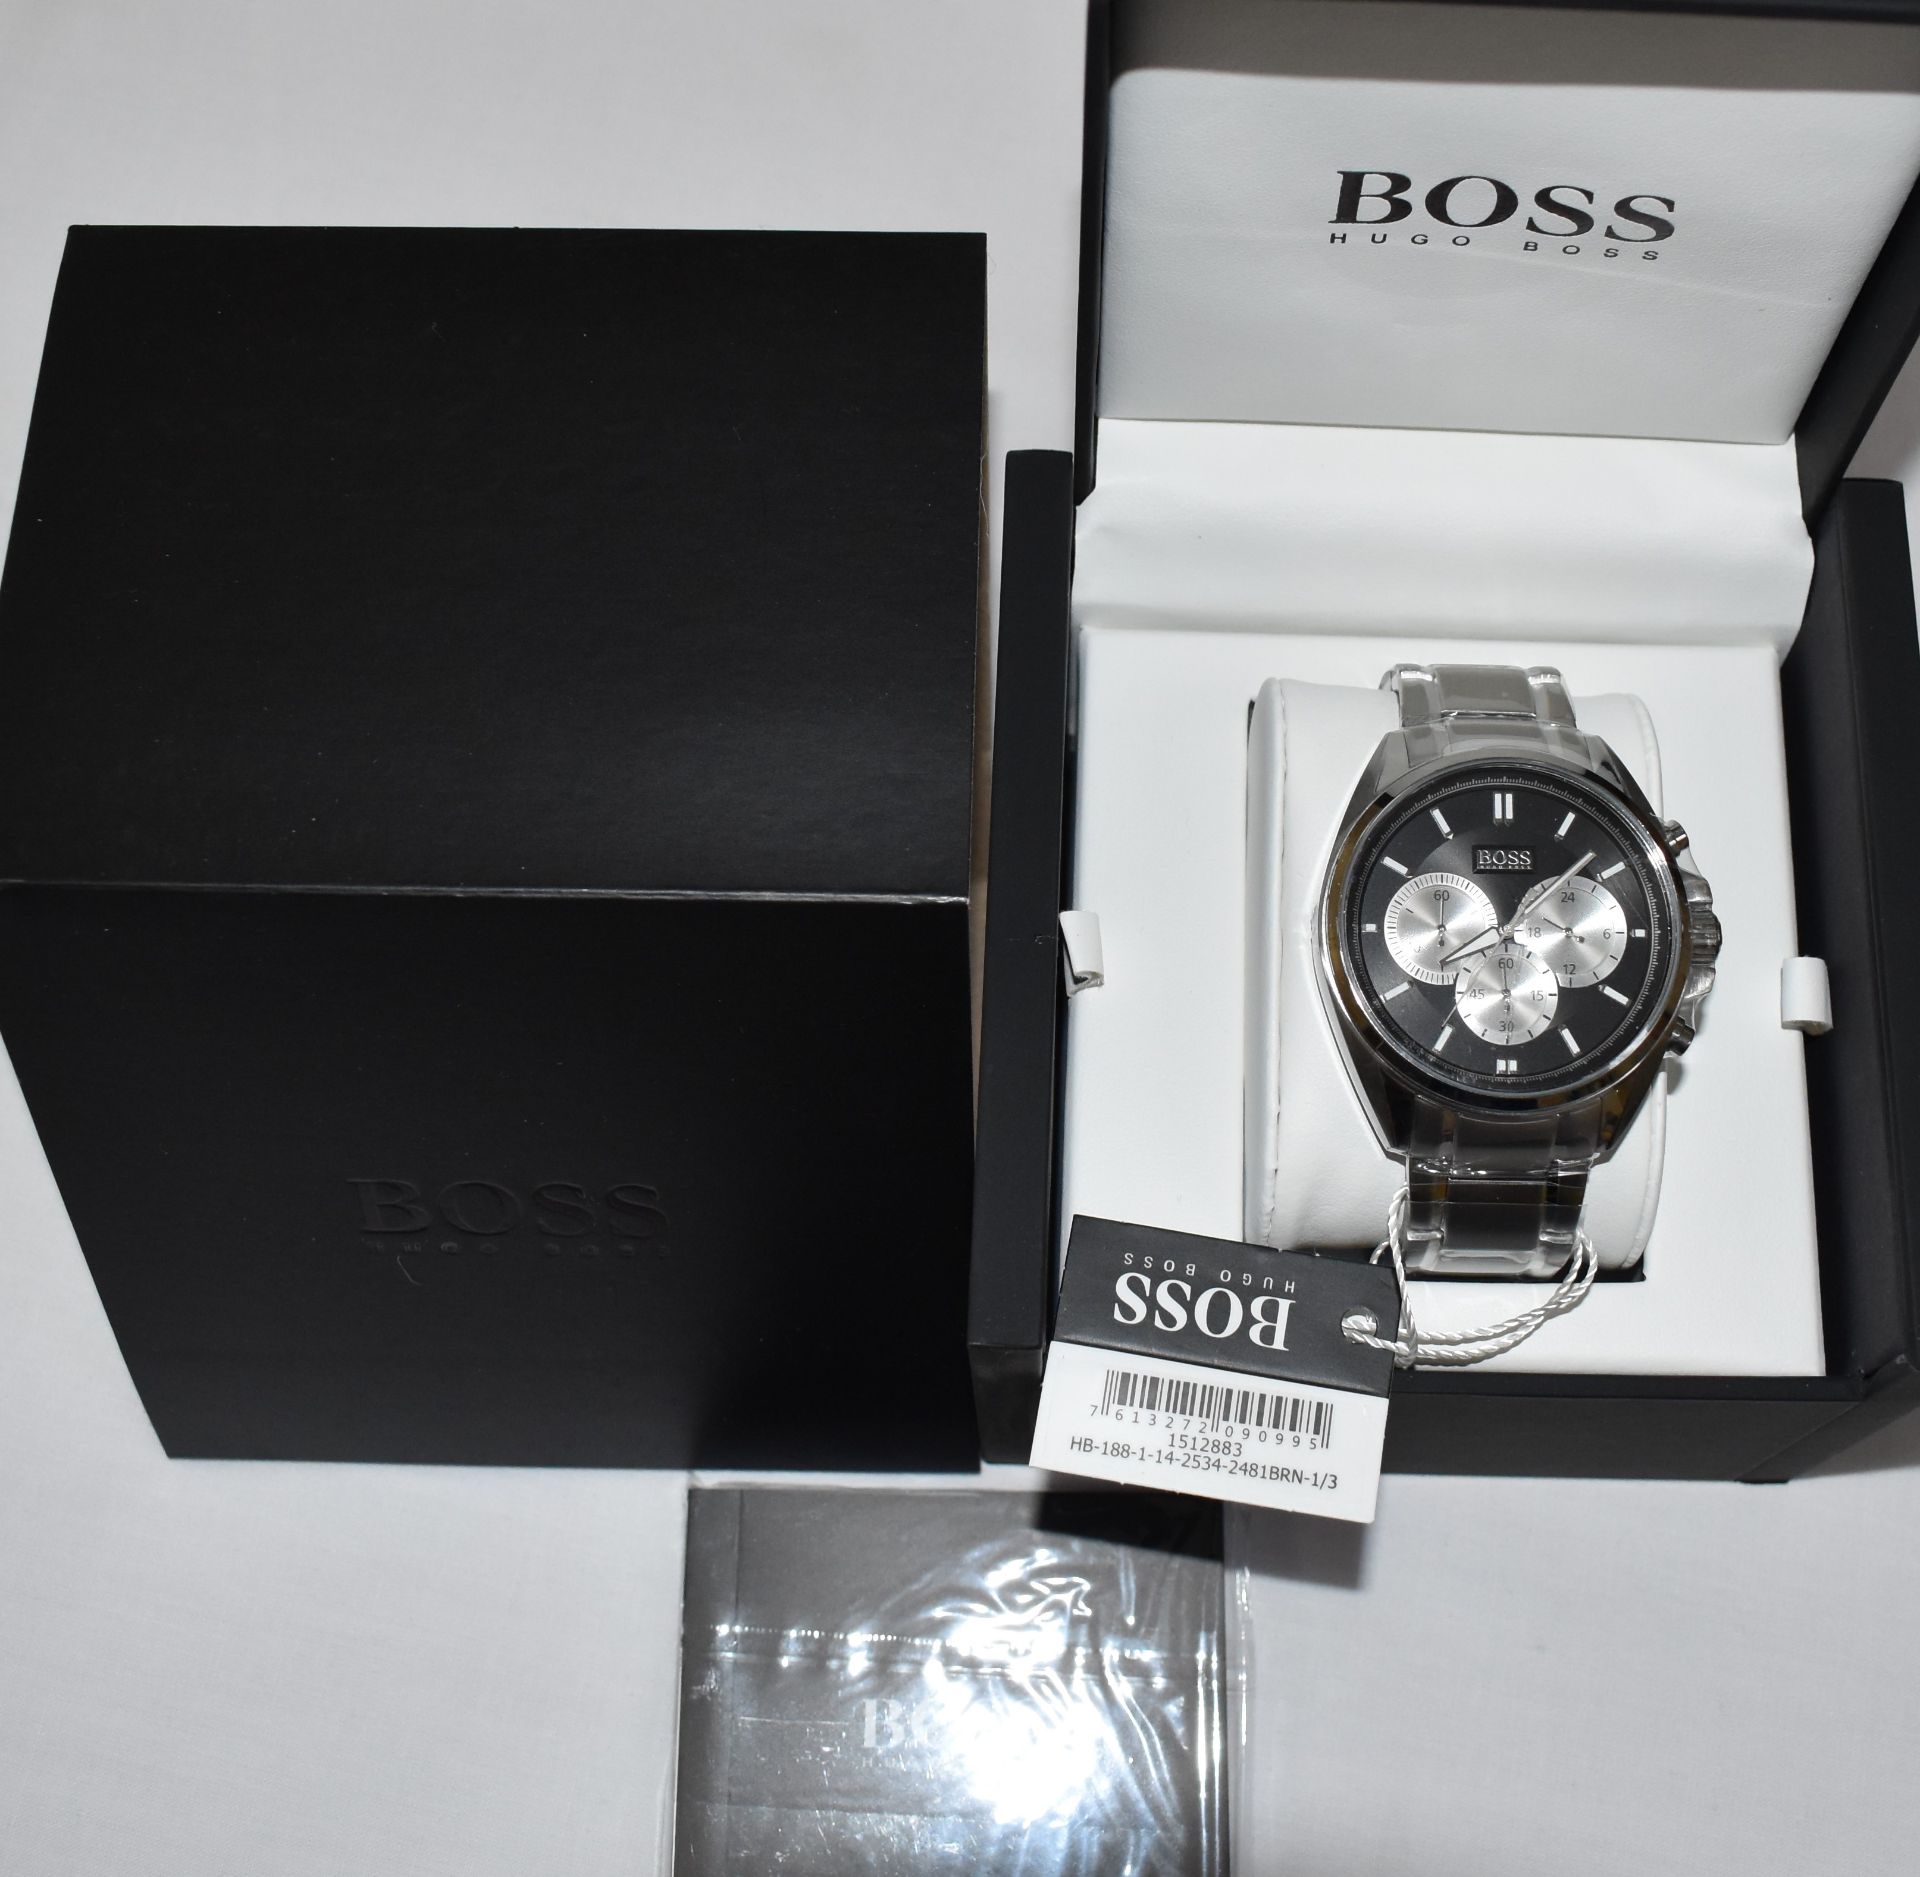 Hugo Boss Men's Watch 1512883 - Image 3 of 3